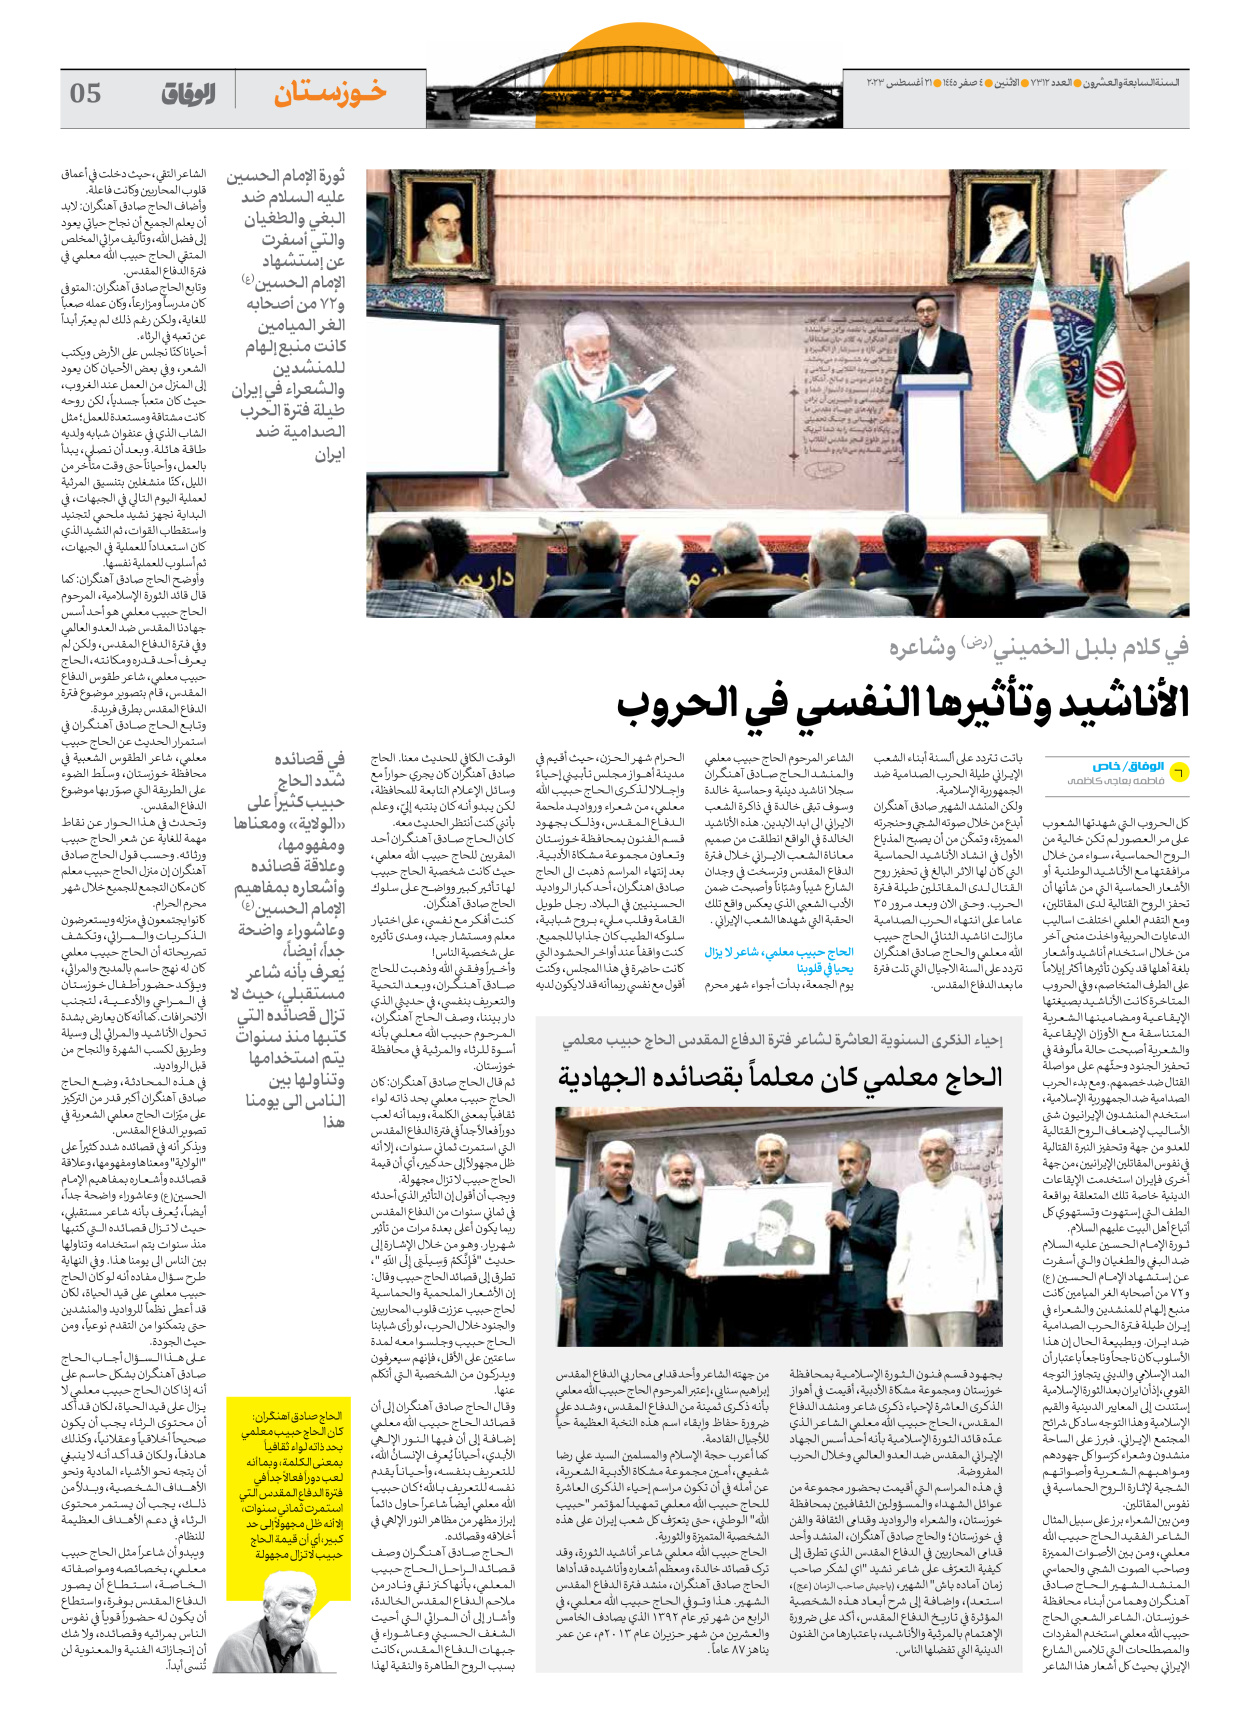 صحیفة ایران الدولیة الوفاق - العدد سبعة آلاف وثلاثمائة واثنا عشر - ٢١ أغسطس ٢٠٢٣ - الصفحة ٥